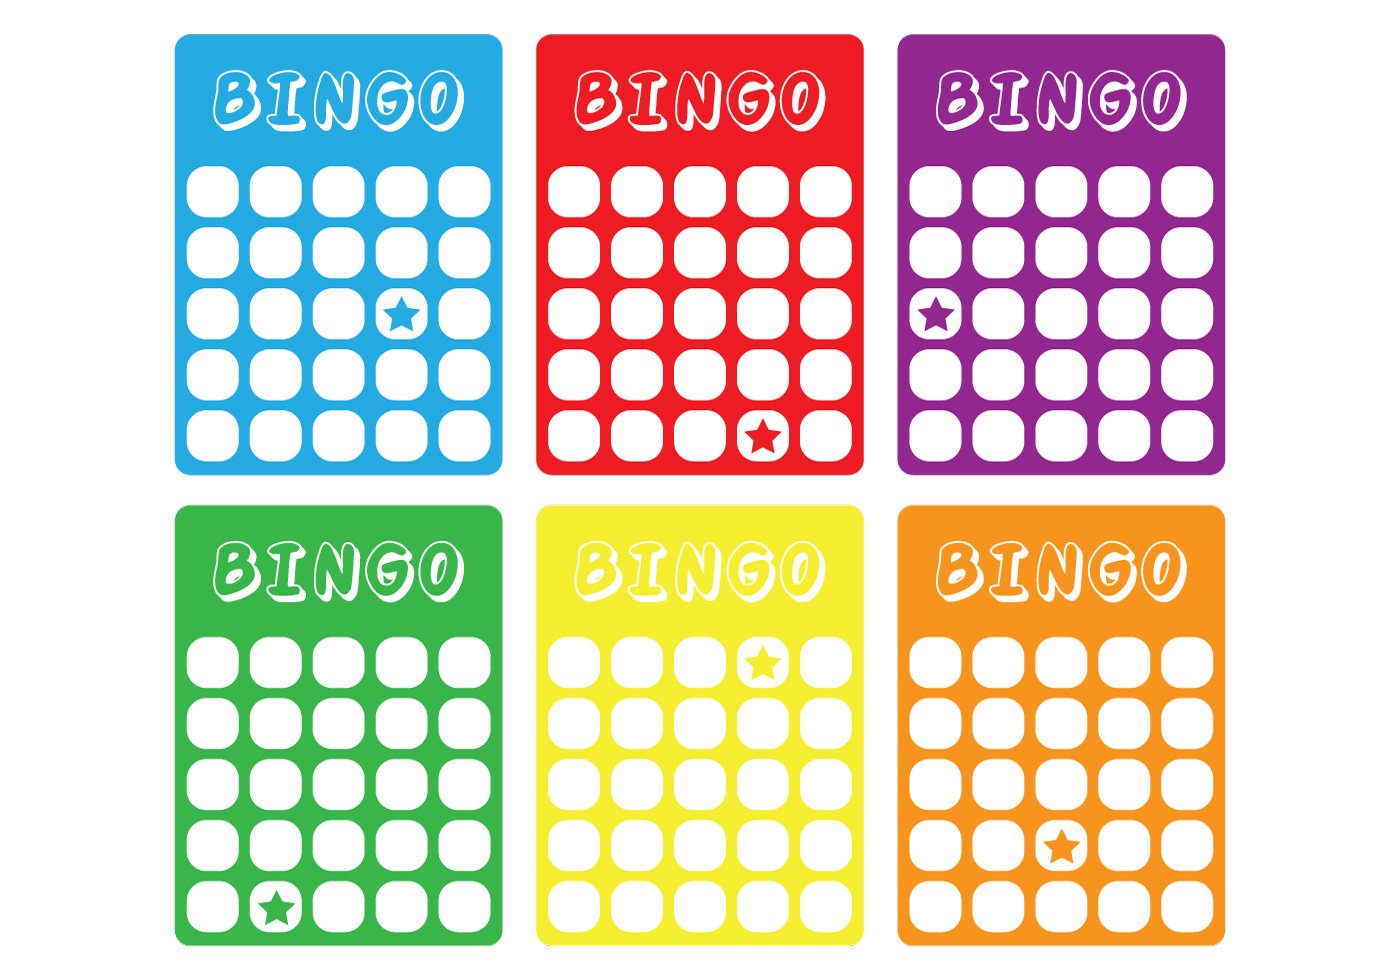 Bingo com. Карточки для игры в Бинго. Пустые карточки для Бинго. Бинго шаблон. Макет для карточки Бинго.